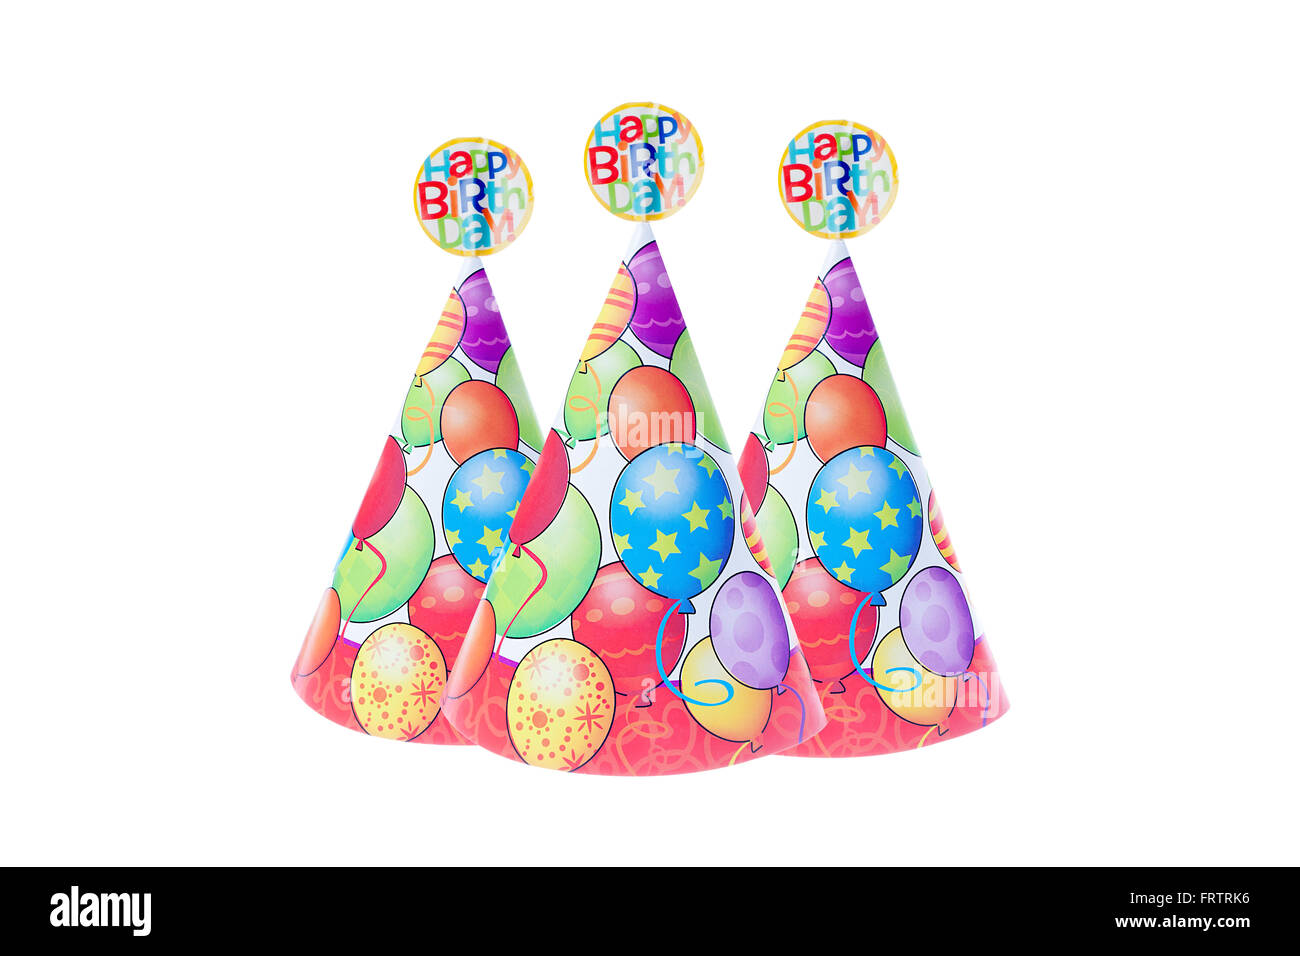 Immagine di coloratissimi cappelli di compleanno con design a palloncino e buon compleanno segno sulla parte superiore su sfondo bianco. Foto Stock